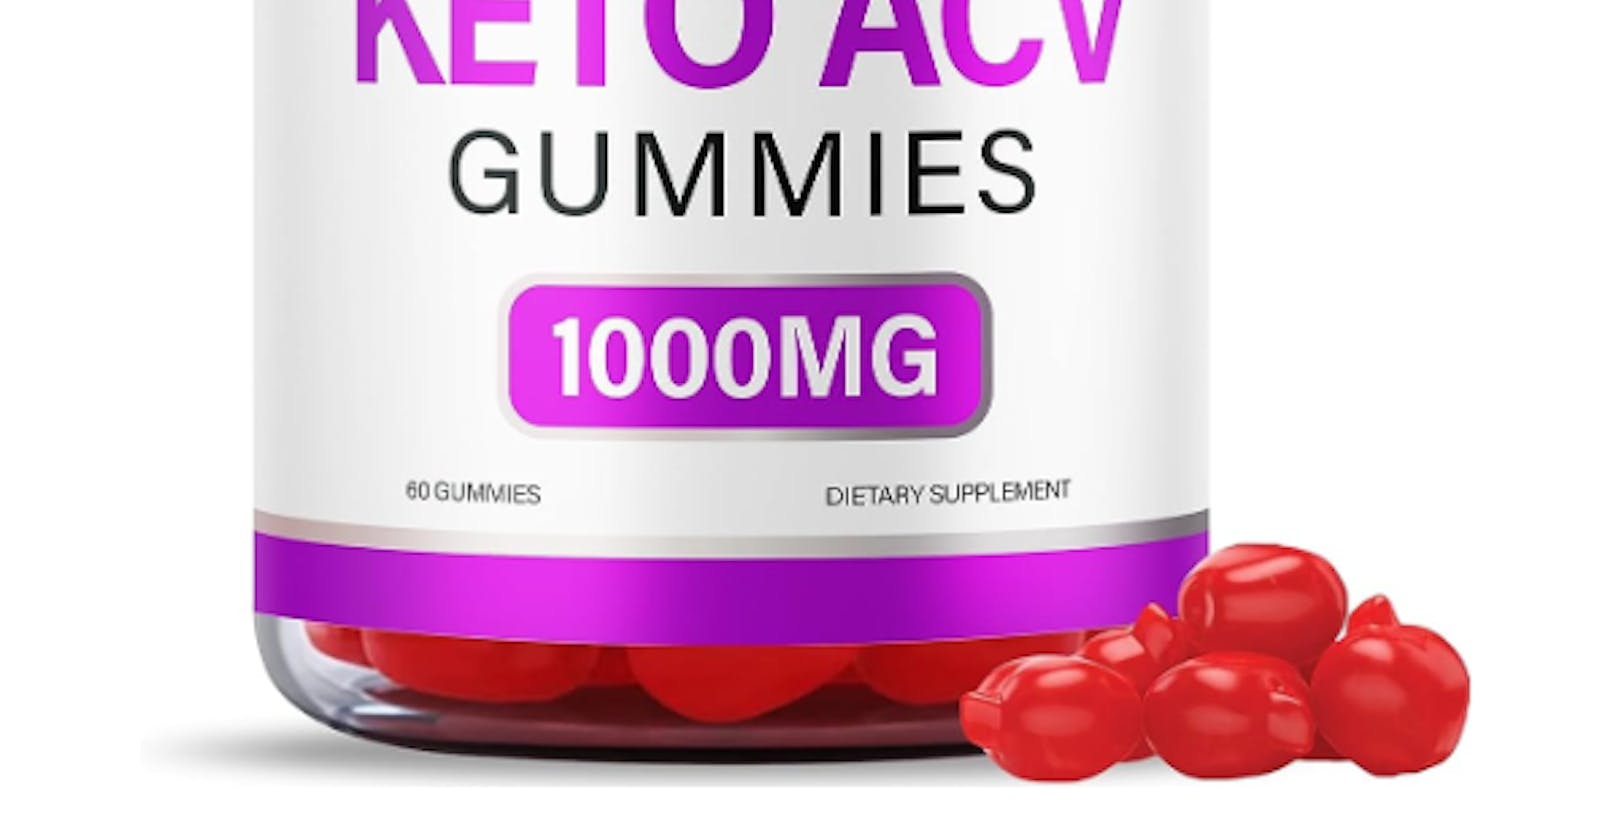 BioGen Keto ACV Gummies OFFICIAL | Get #1 Weight Loss NEW!